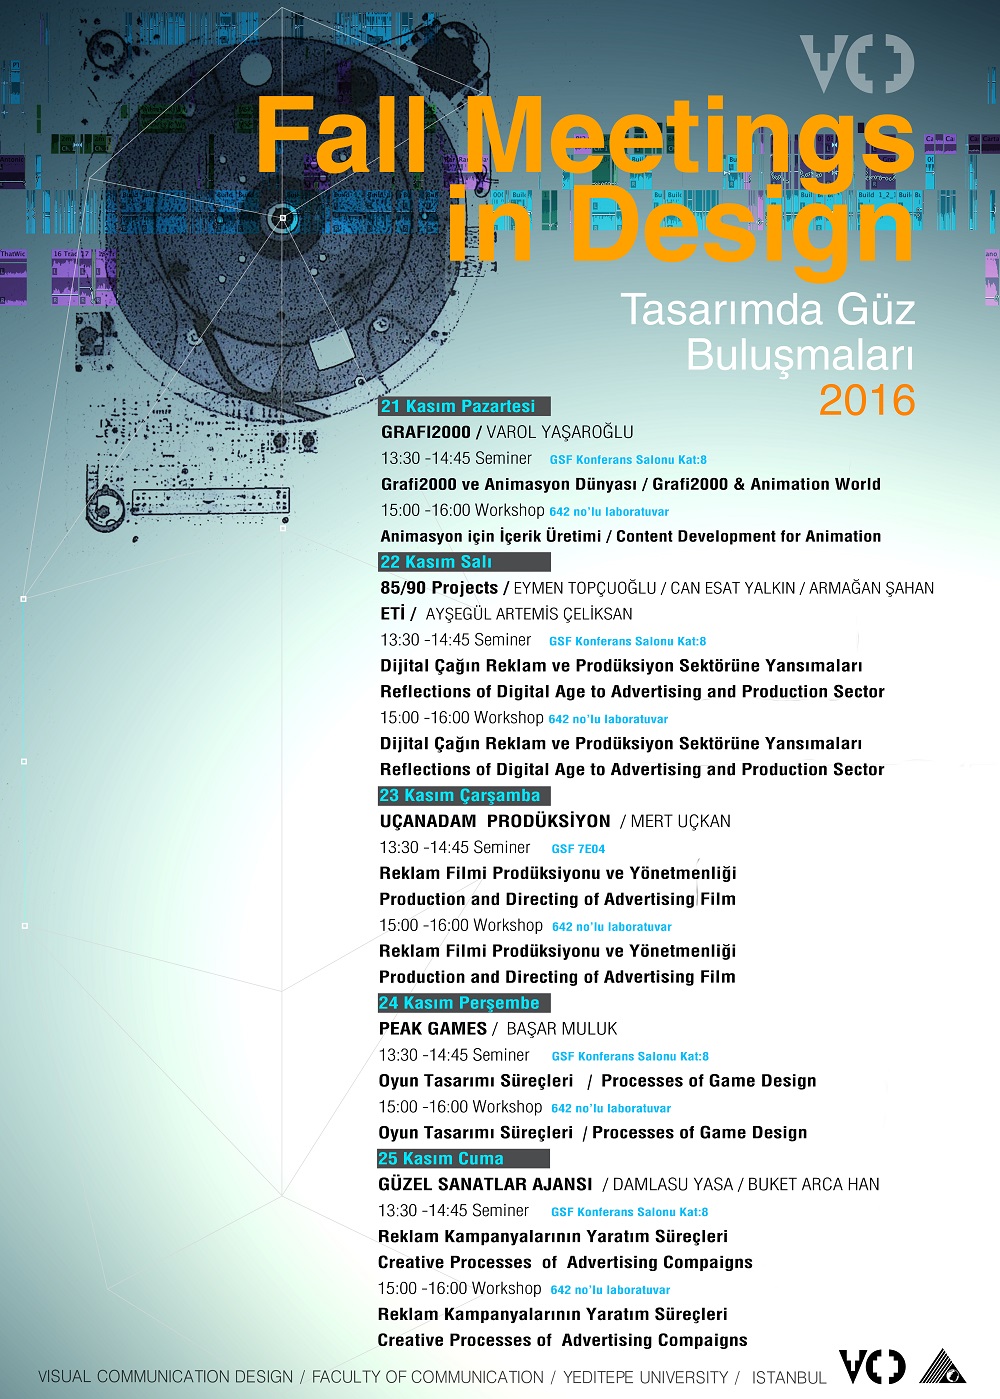 Fall Meetings in Design 2016